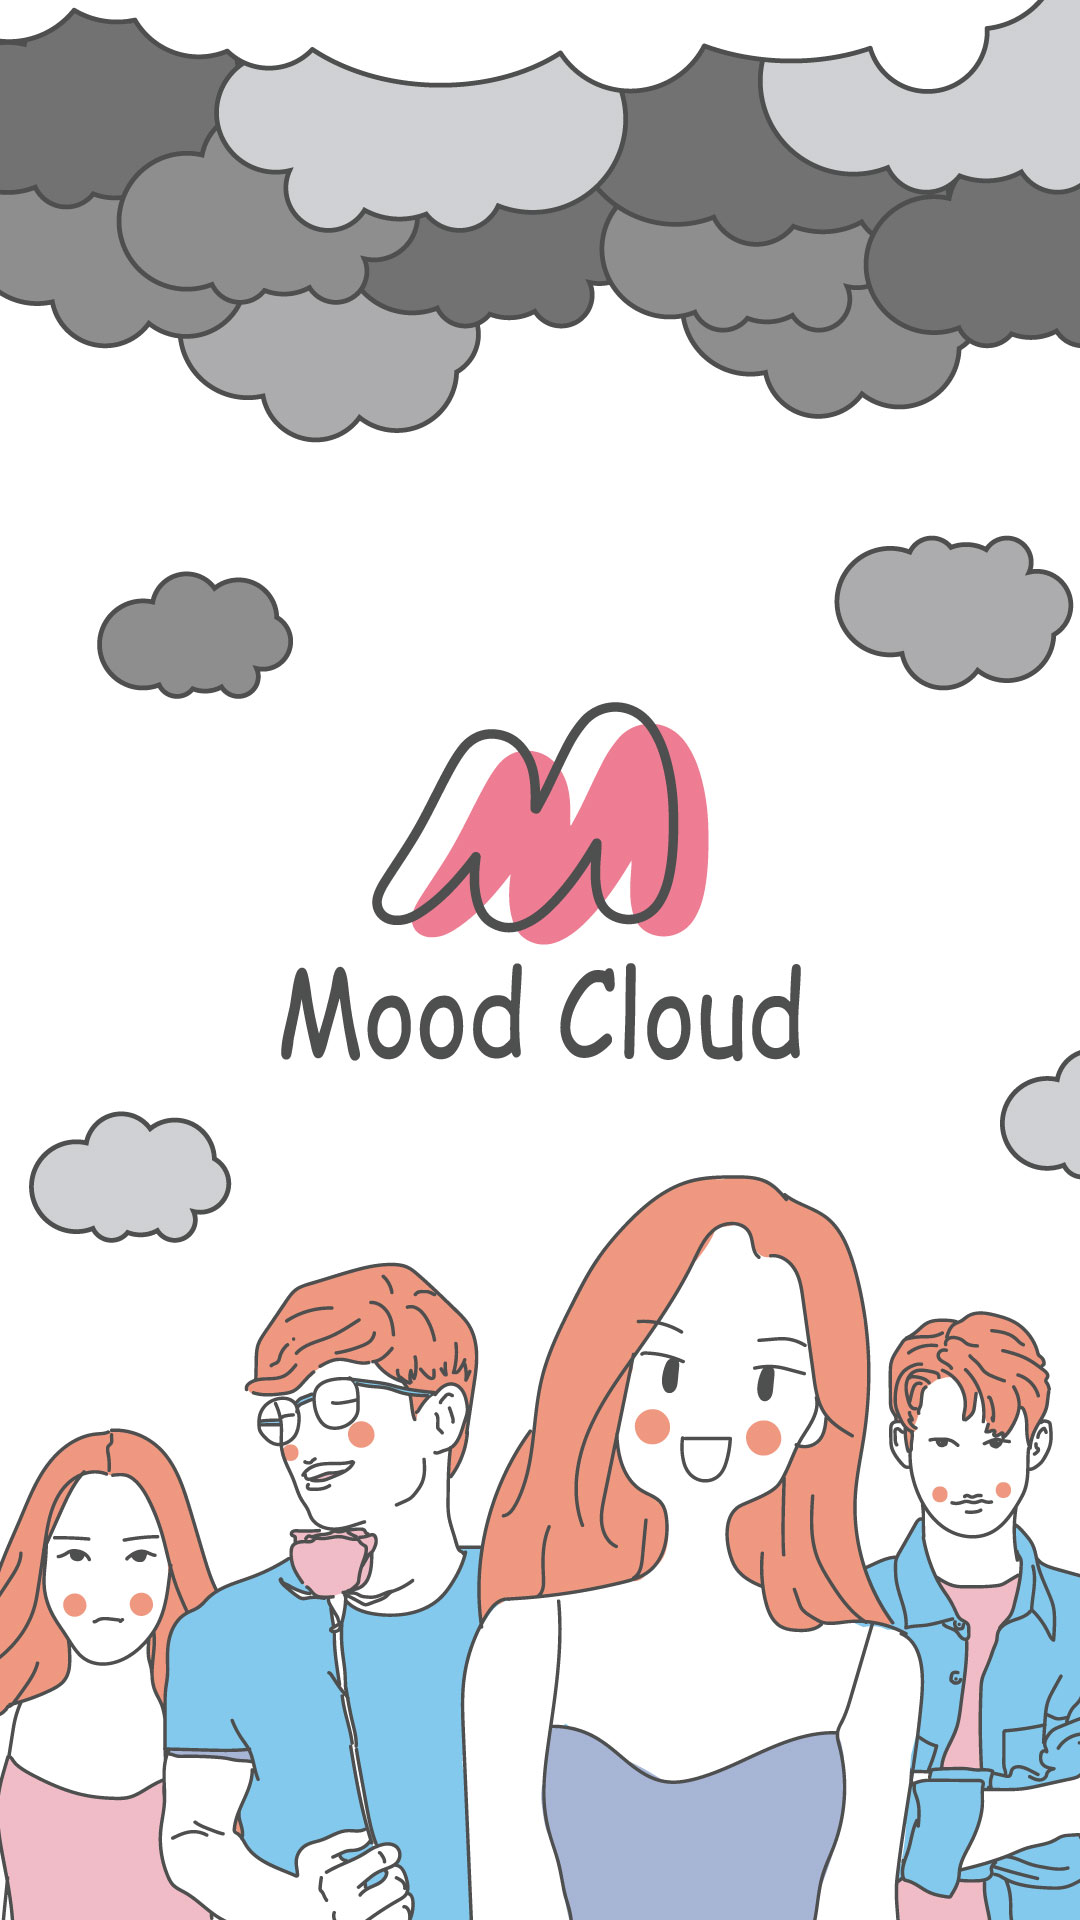 Mood Cloud